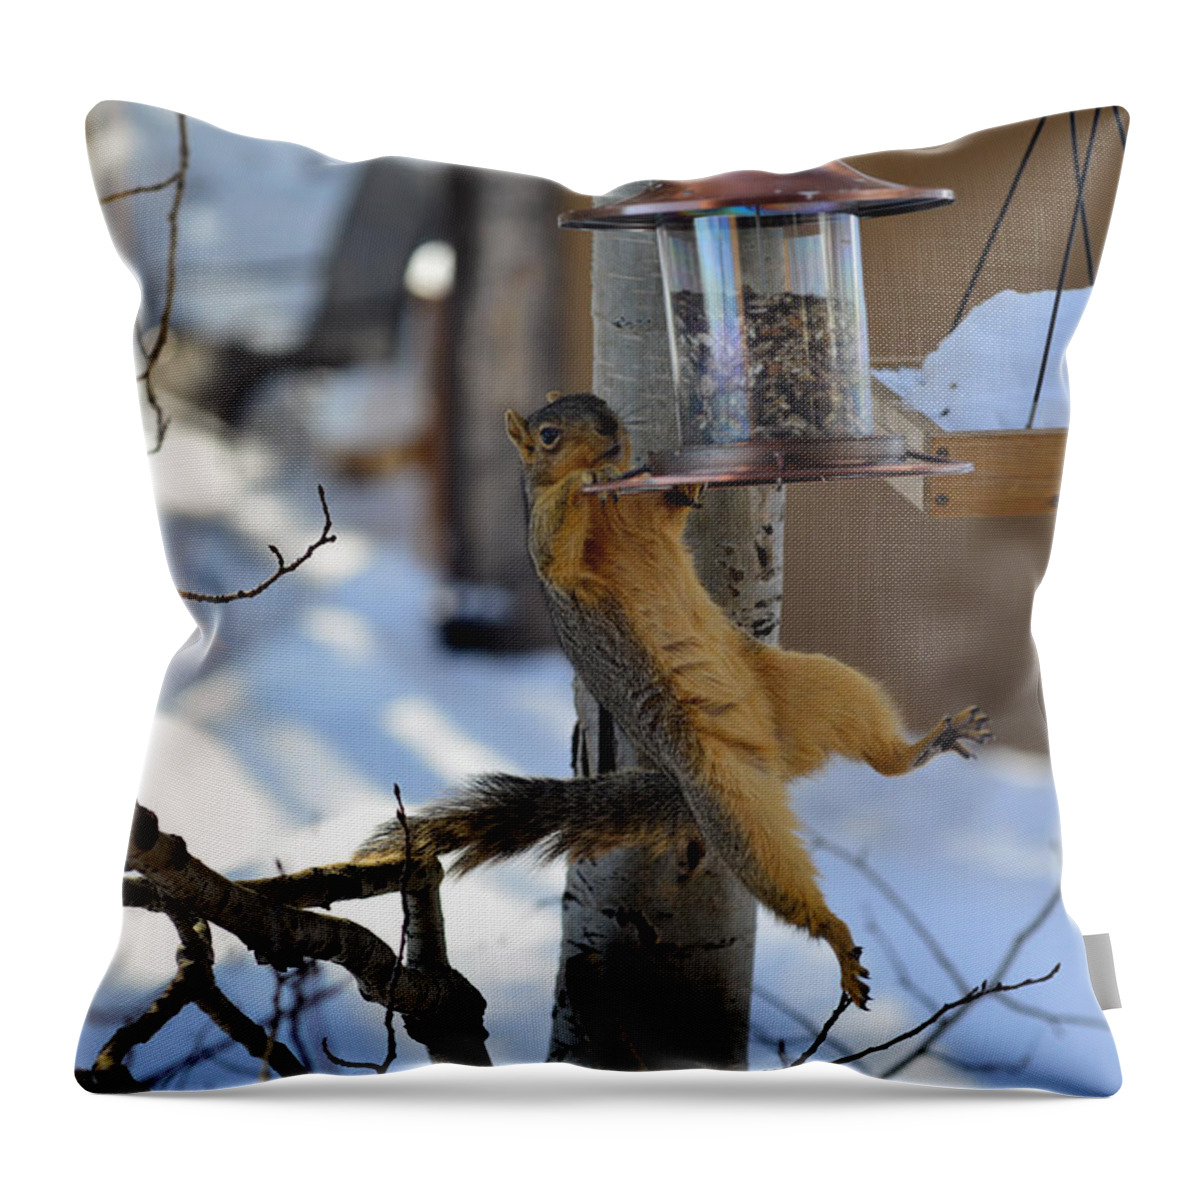 Squirrel Throw Pillow featuring the photograph A Little Help Please by Matt Swinden